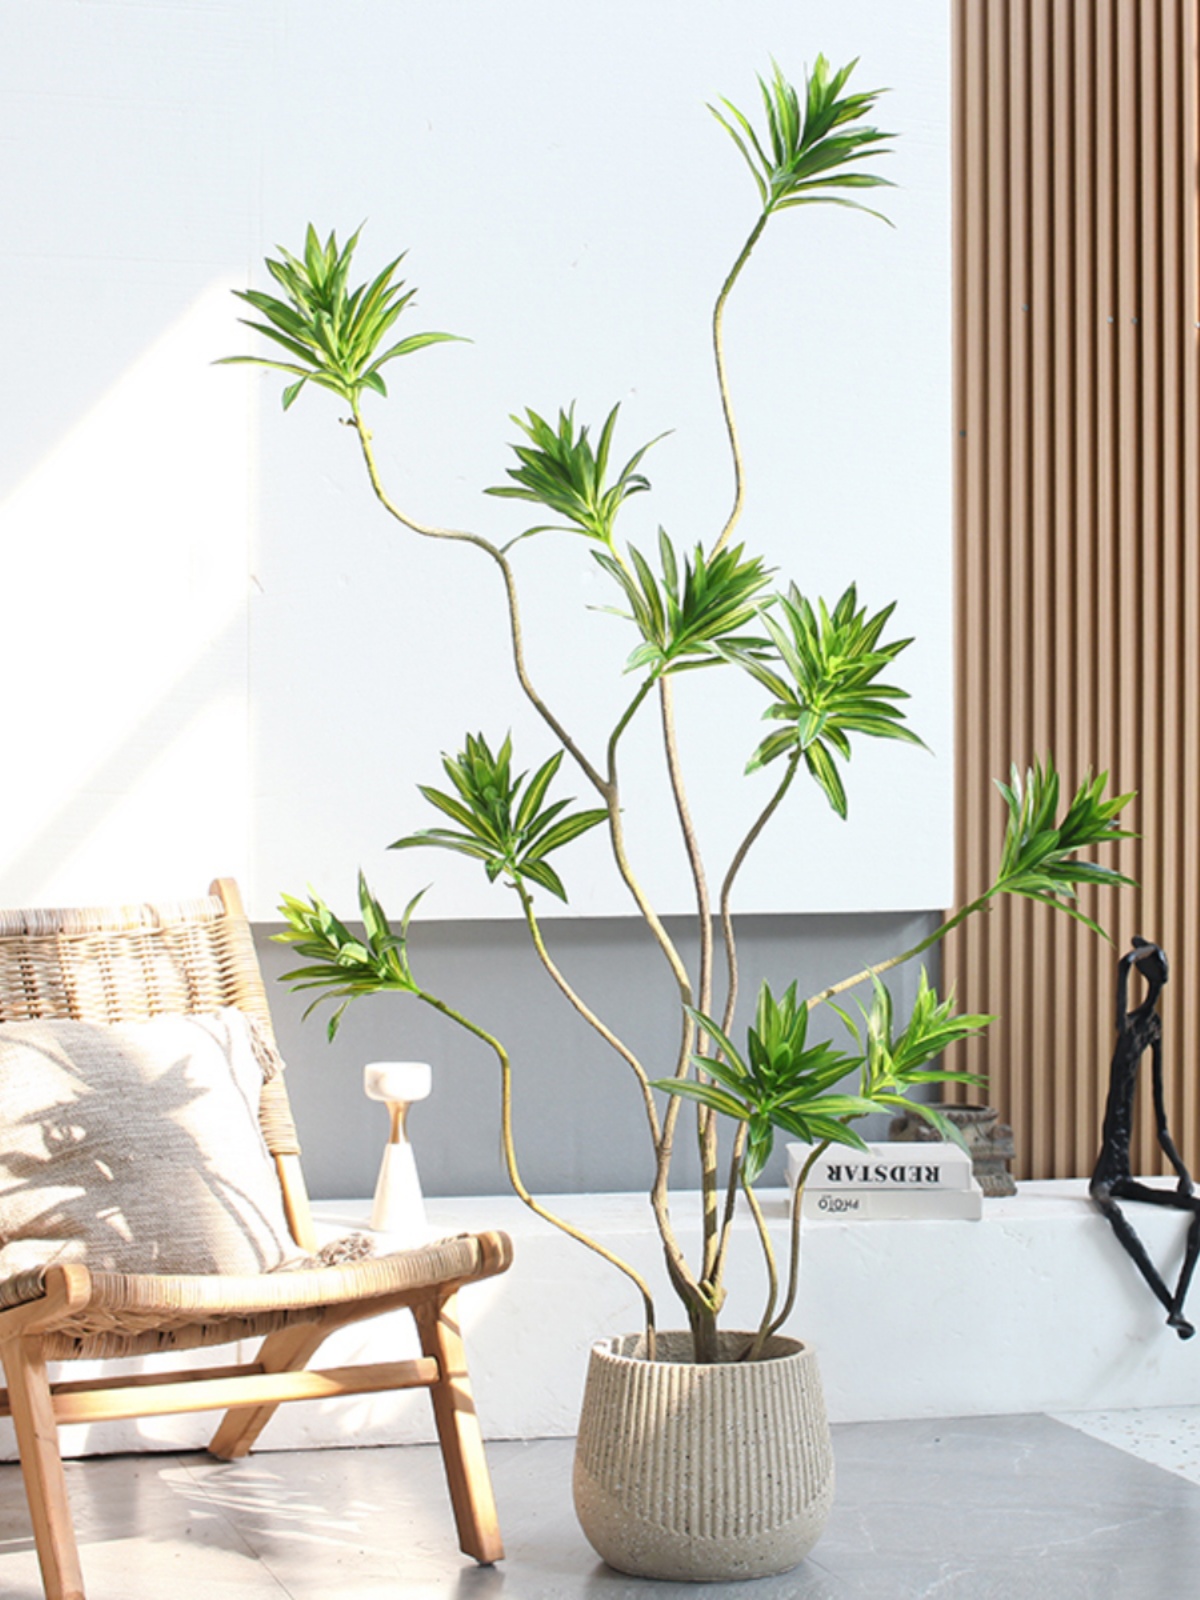 仿真富貴百合竹盆景綠植擺件 裝飾客廳電視櫃 落地綠植盆栽 (3.1折)